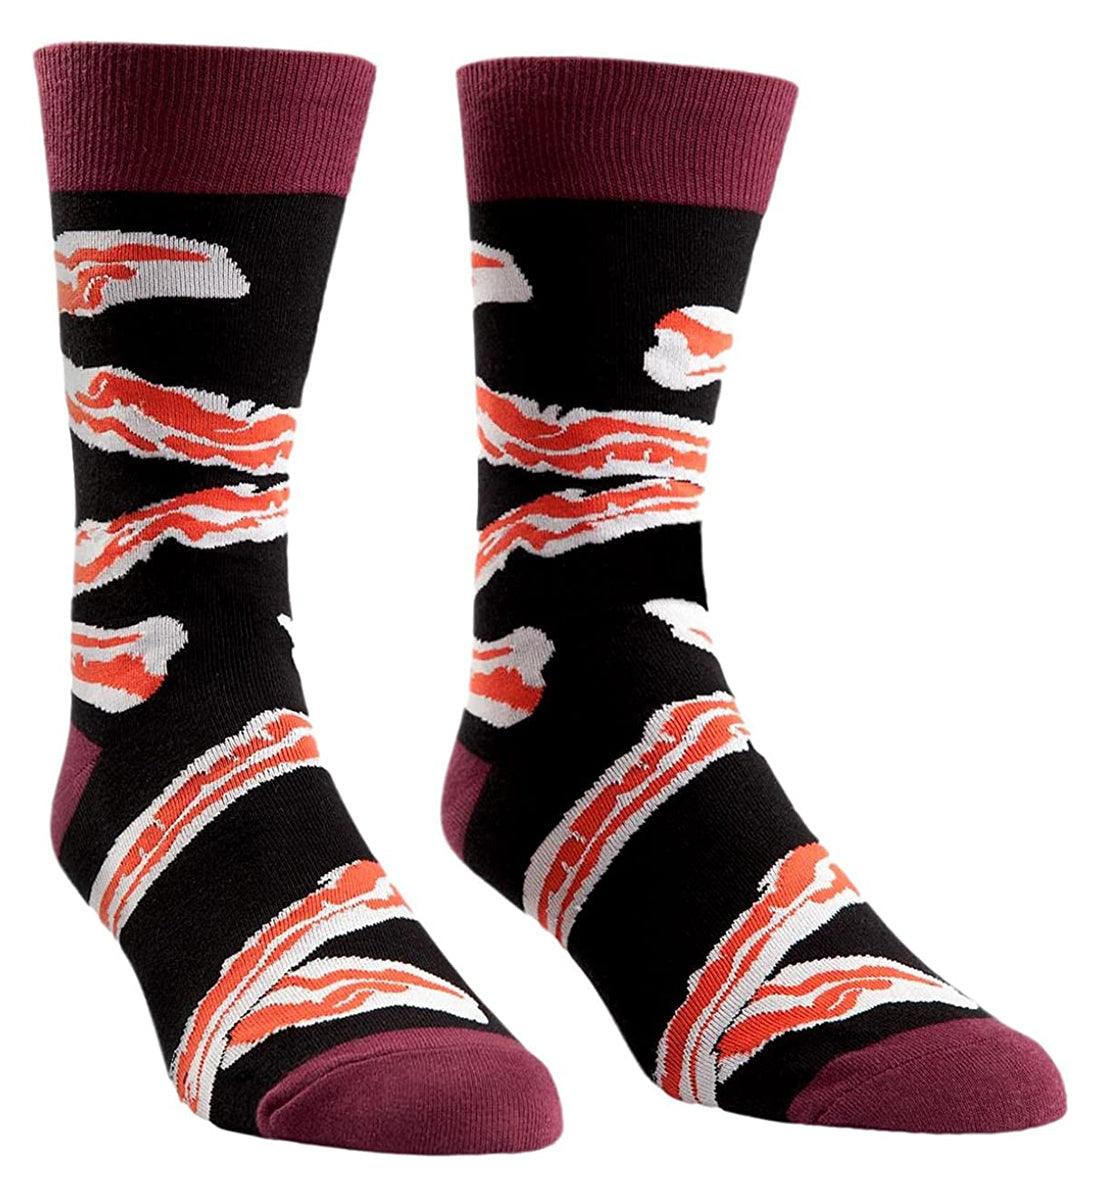 SOCK it to me Men's Crew Socks (mef0069),Bacon - Bacon,One Size